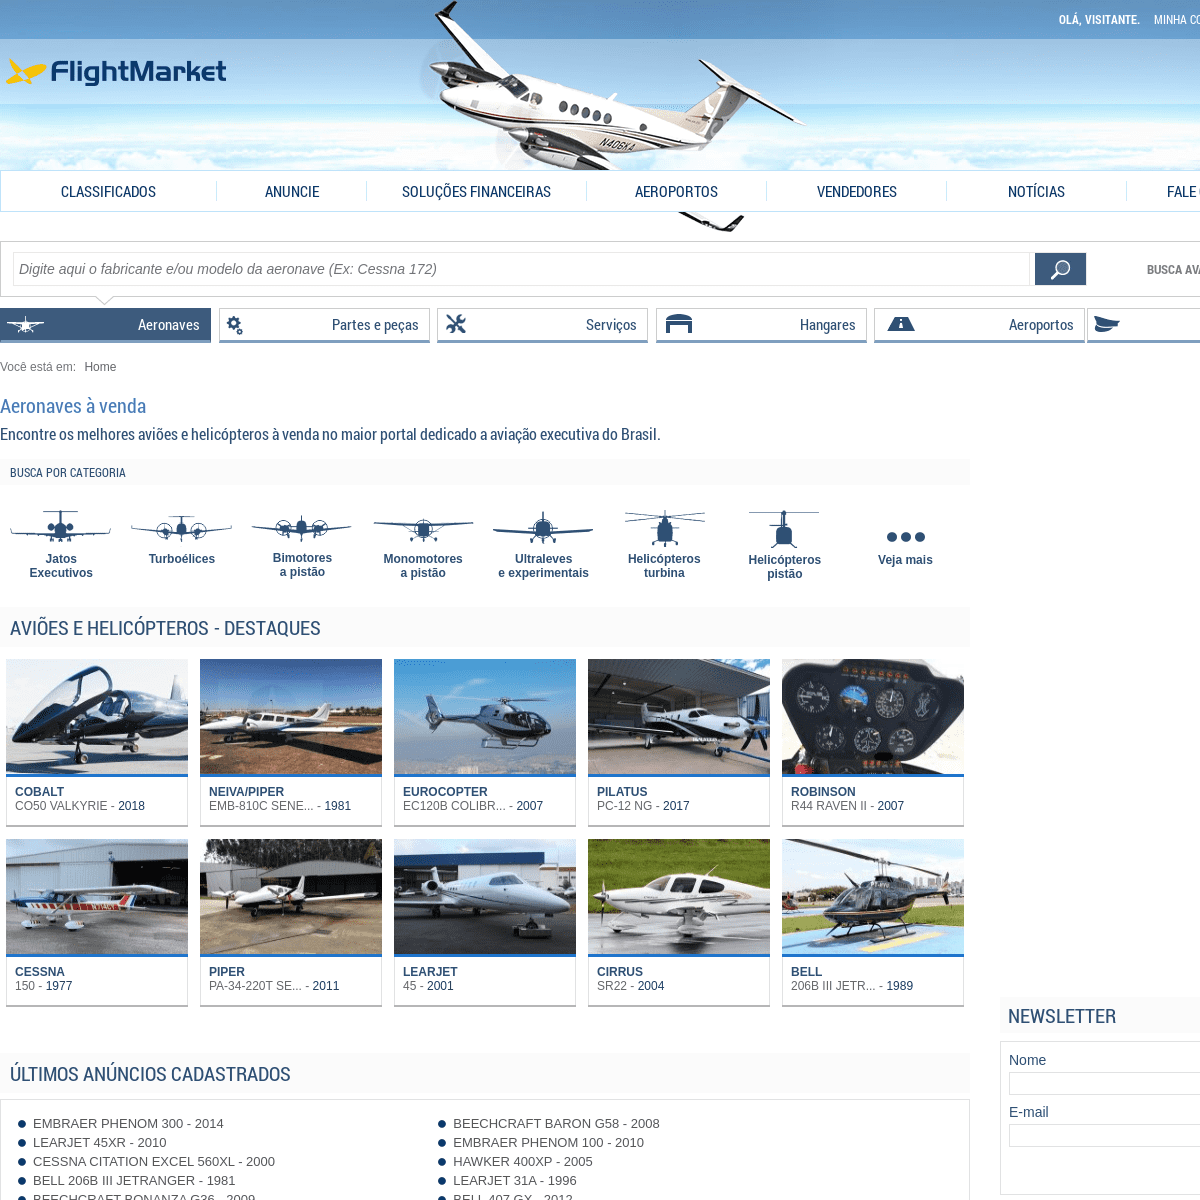 A complete backup of flightmarket.com.br